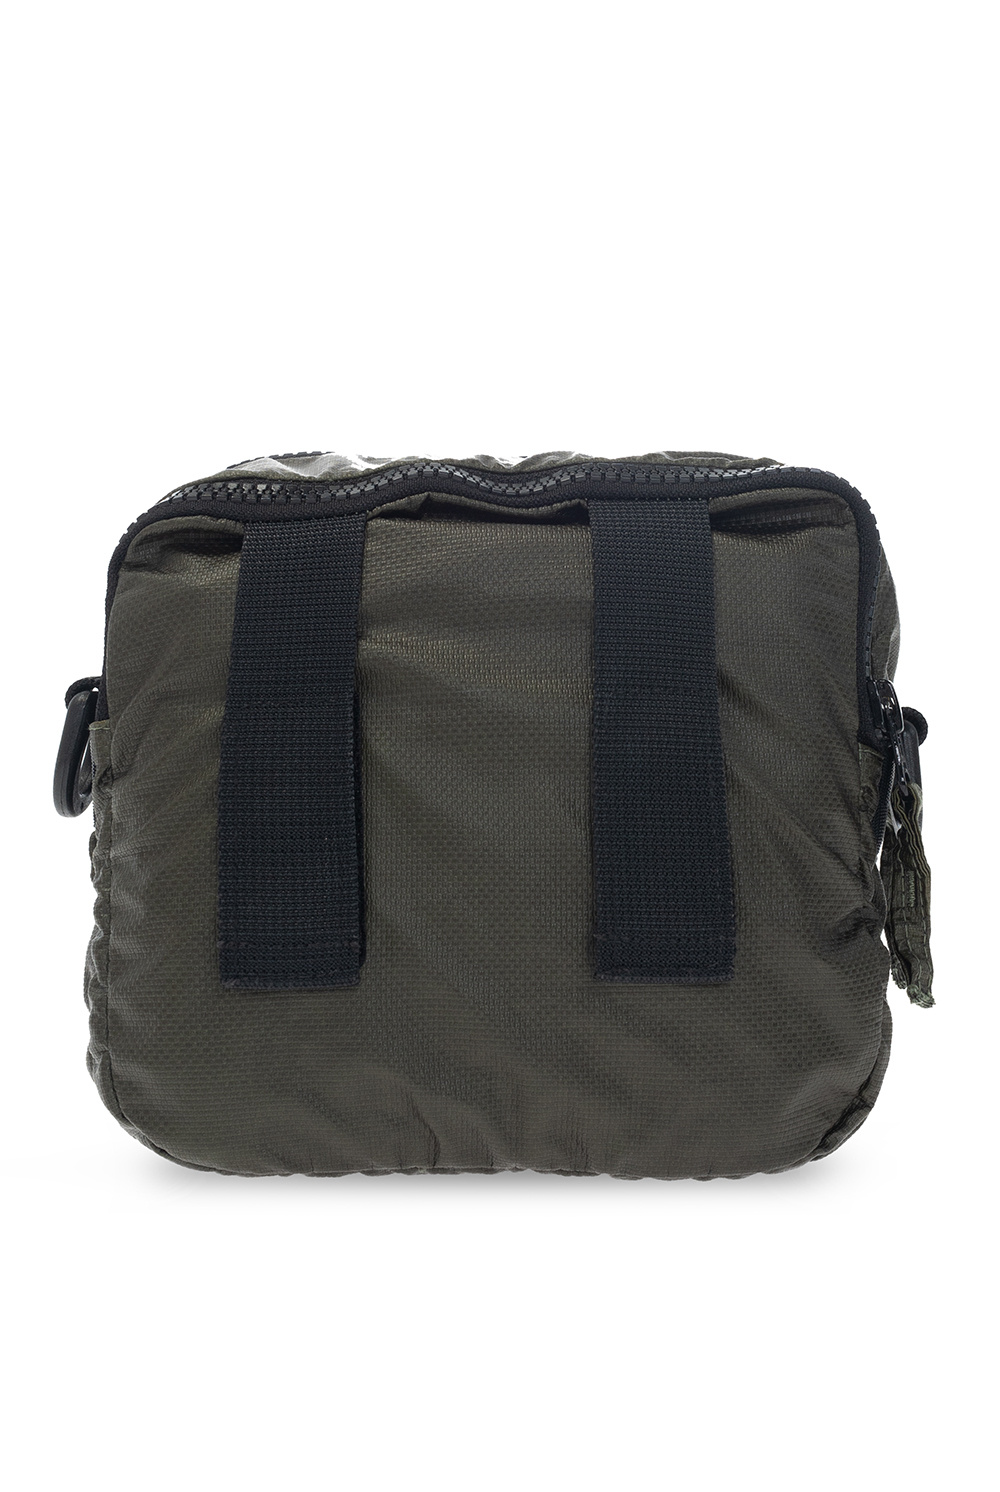 Stone Island Rucsac Backpack 3 Compartments N00710.11 Khaki